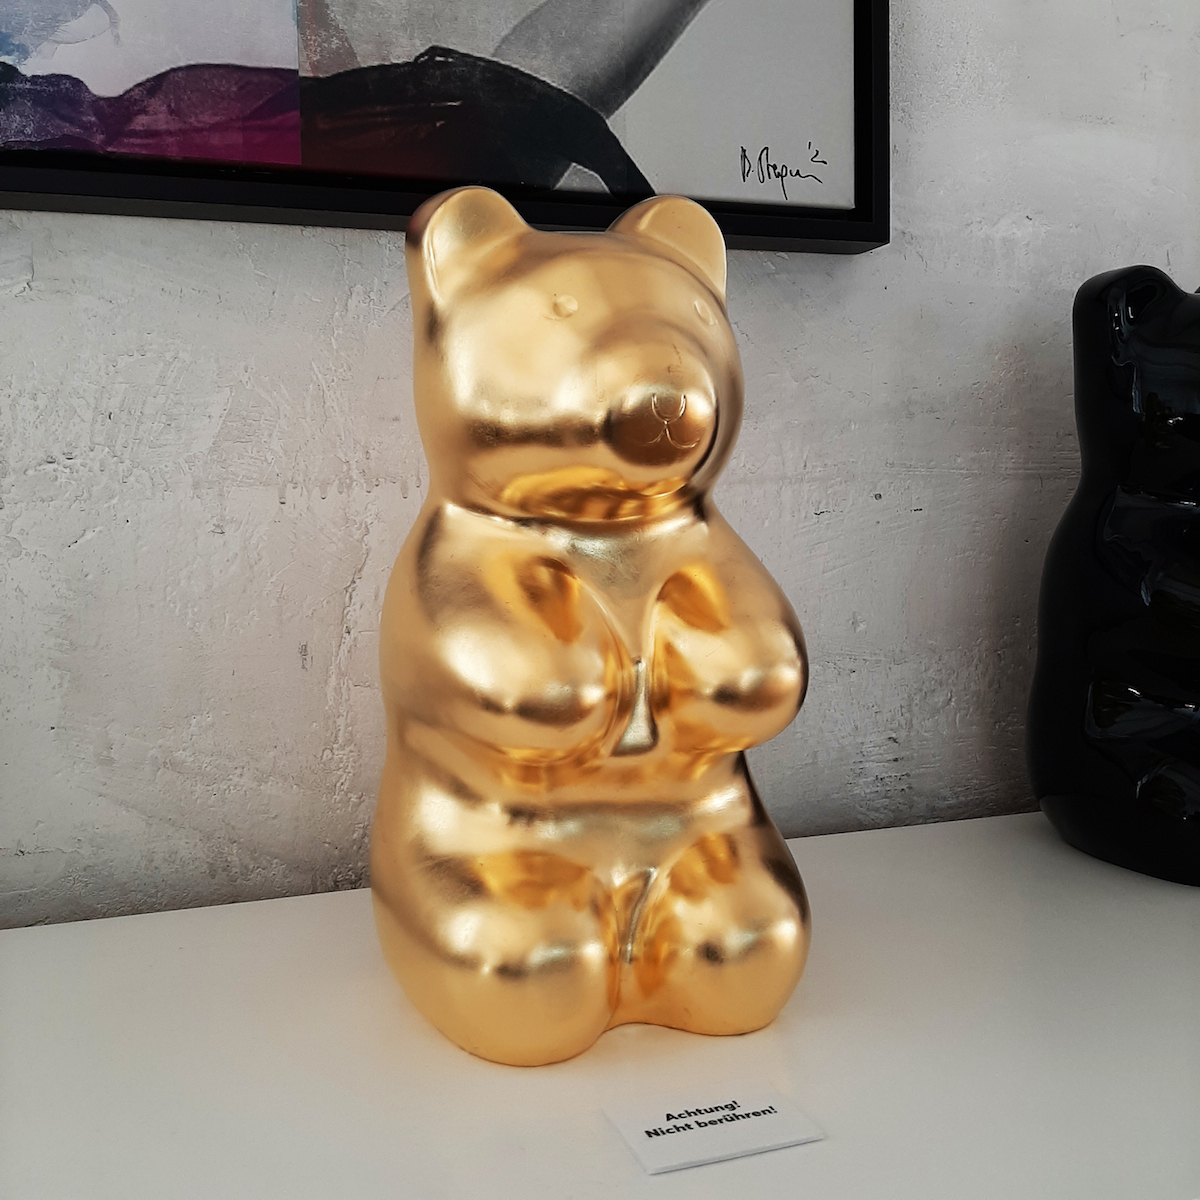 platik bär gold bär bären figur Kunst wien jelly bear jellypoolbear lumi Bär Plastik Figur Manuel Stepan nft wien nft artist